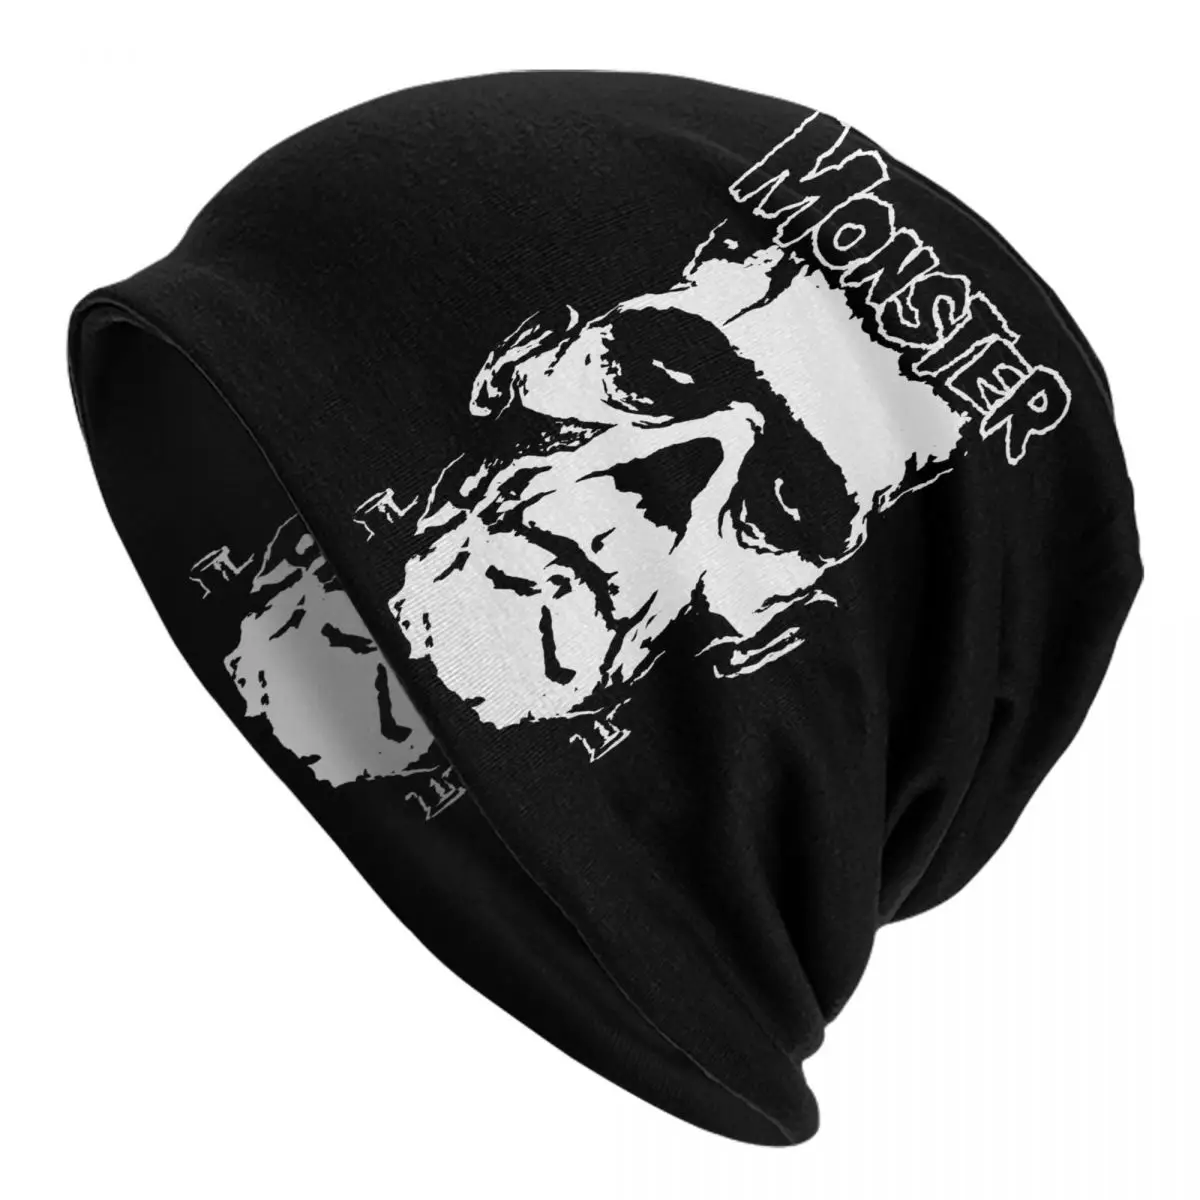 

The Monster Skull Caps Frankenstein Horror Movie Goth Unisex Skullies Beanies Hat Summer Warm Dual-use Bonnet Knitting Hats